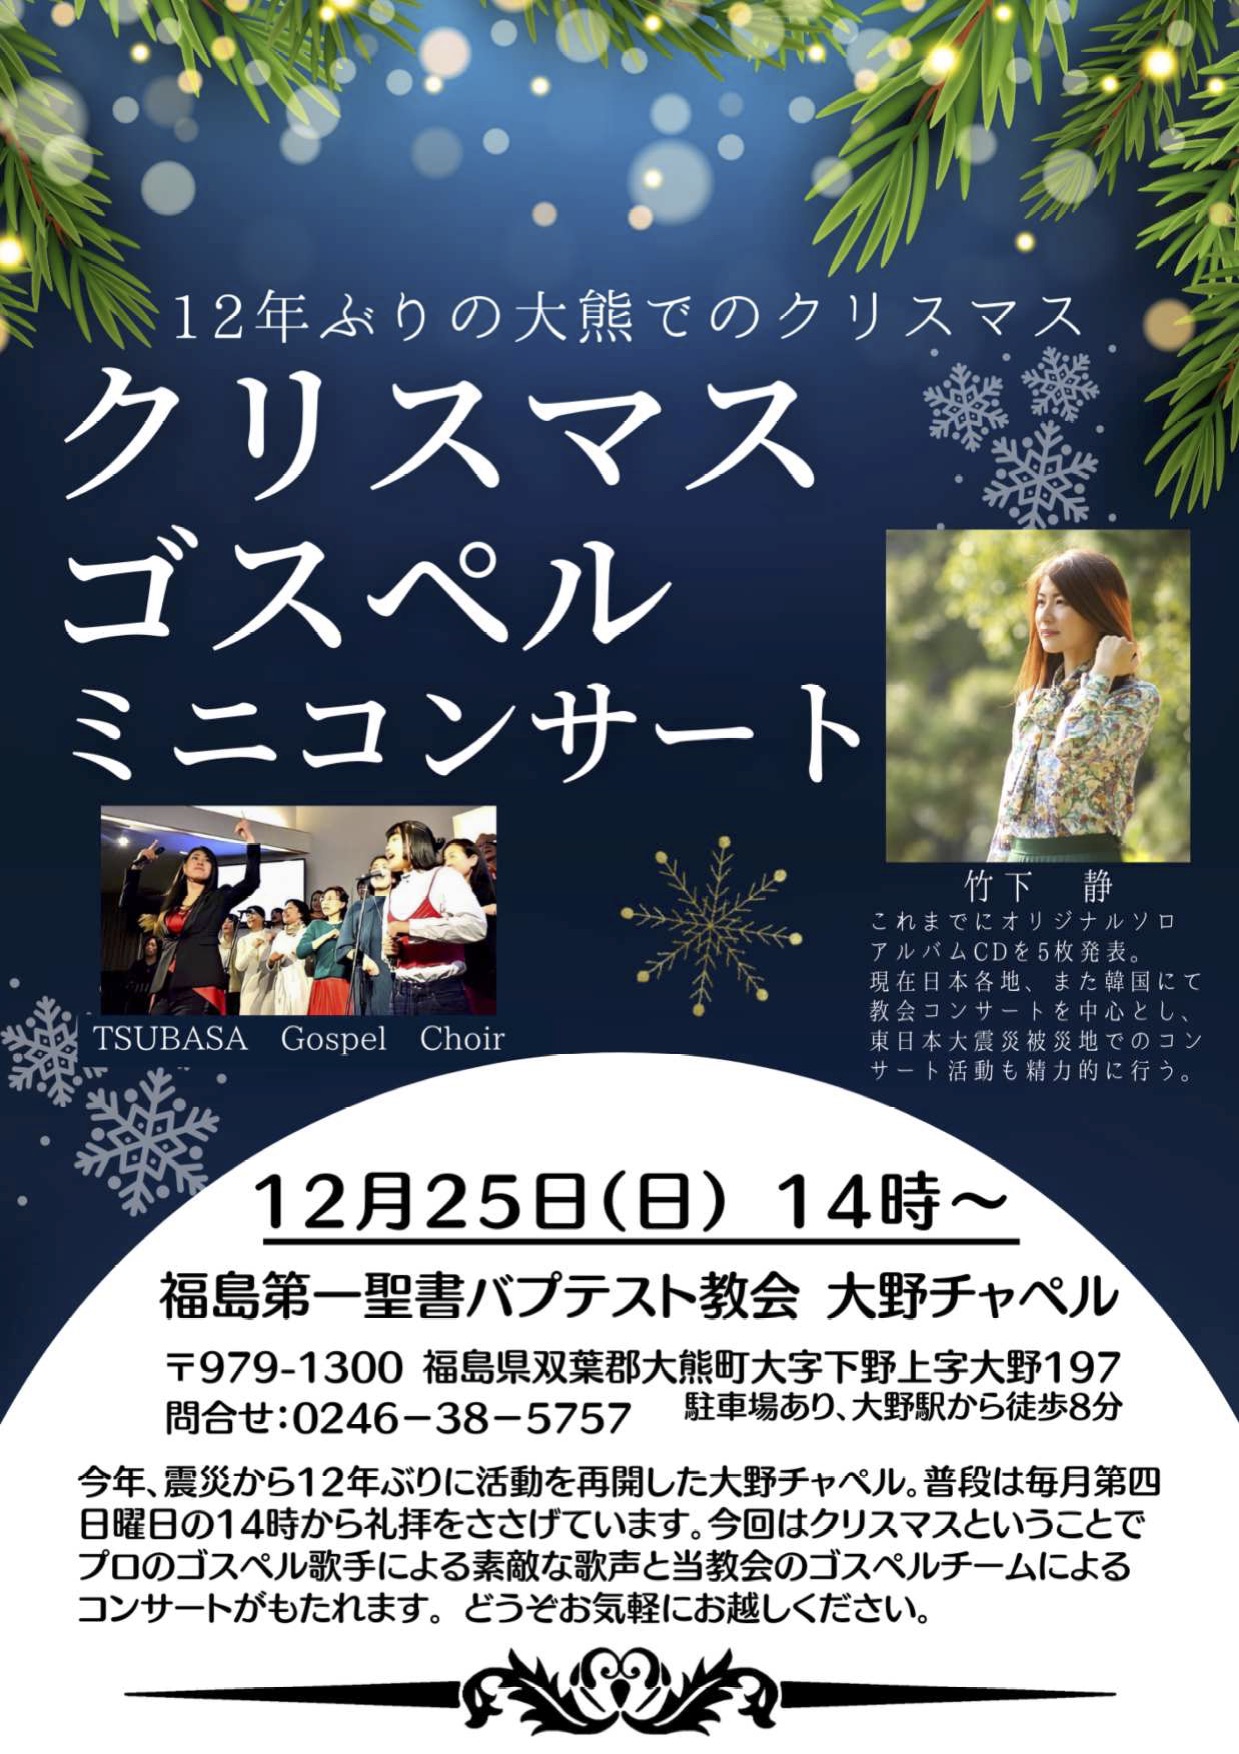 クリスマスゴスペルミニコンサート @ 福島第一聖書バプテスト教会大野チャペル | 大熊町 | 福島県 | 日本